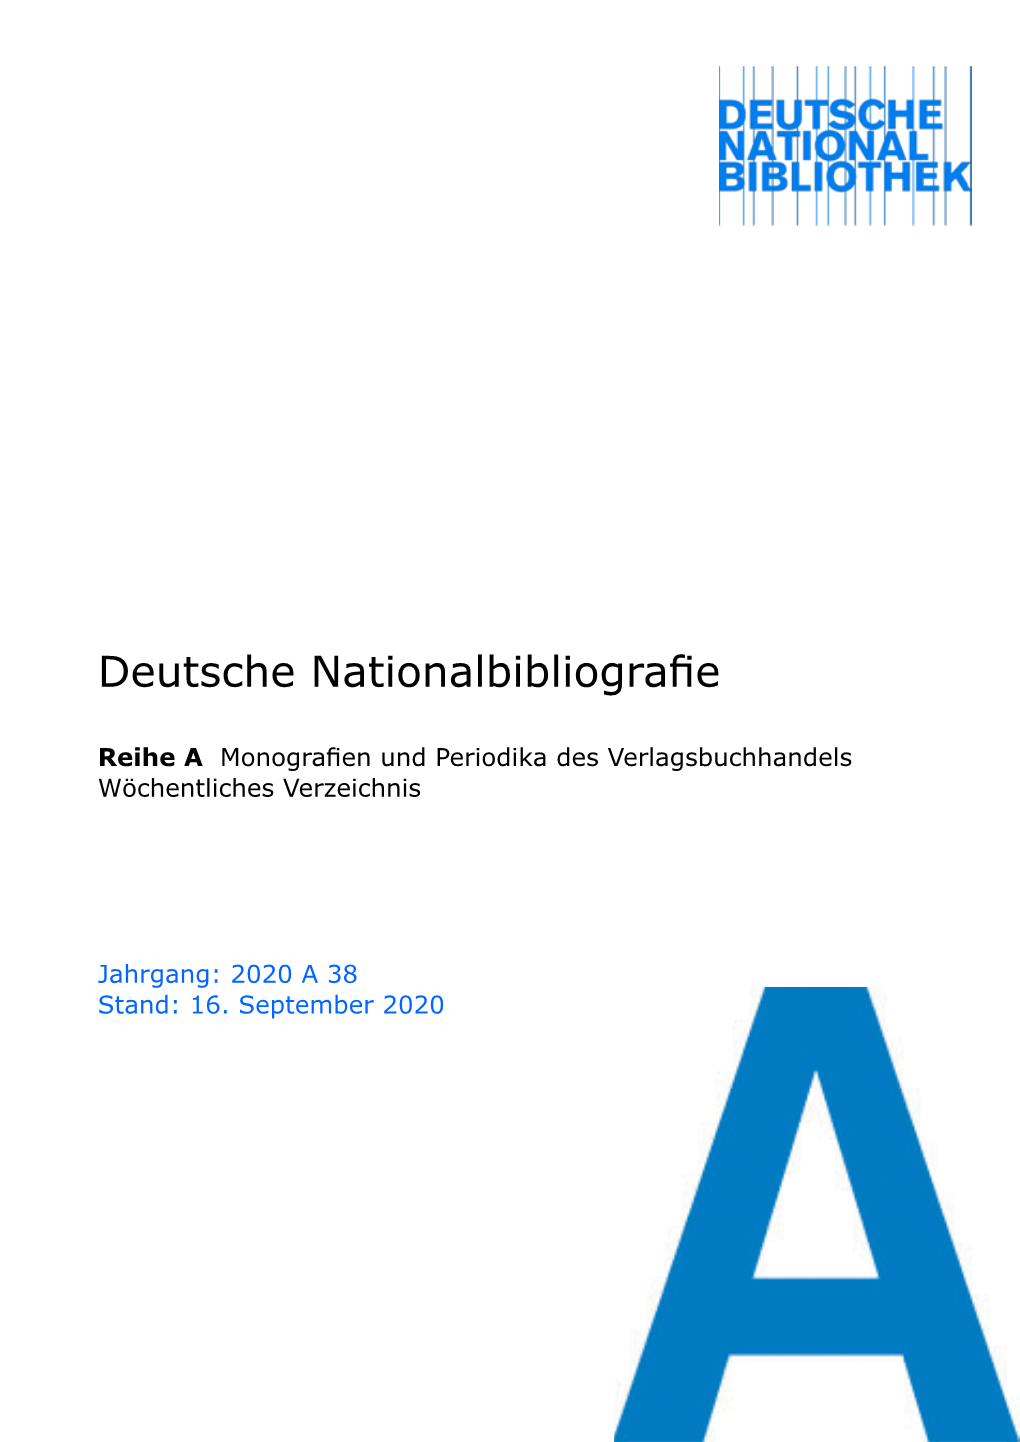 Deutsche Nationalbibliografie 2020 a 38